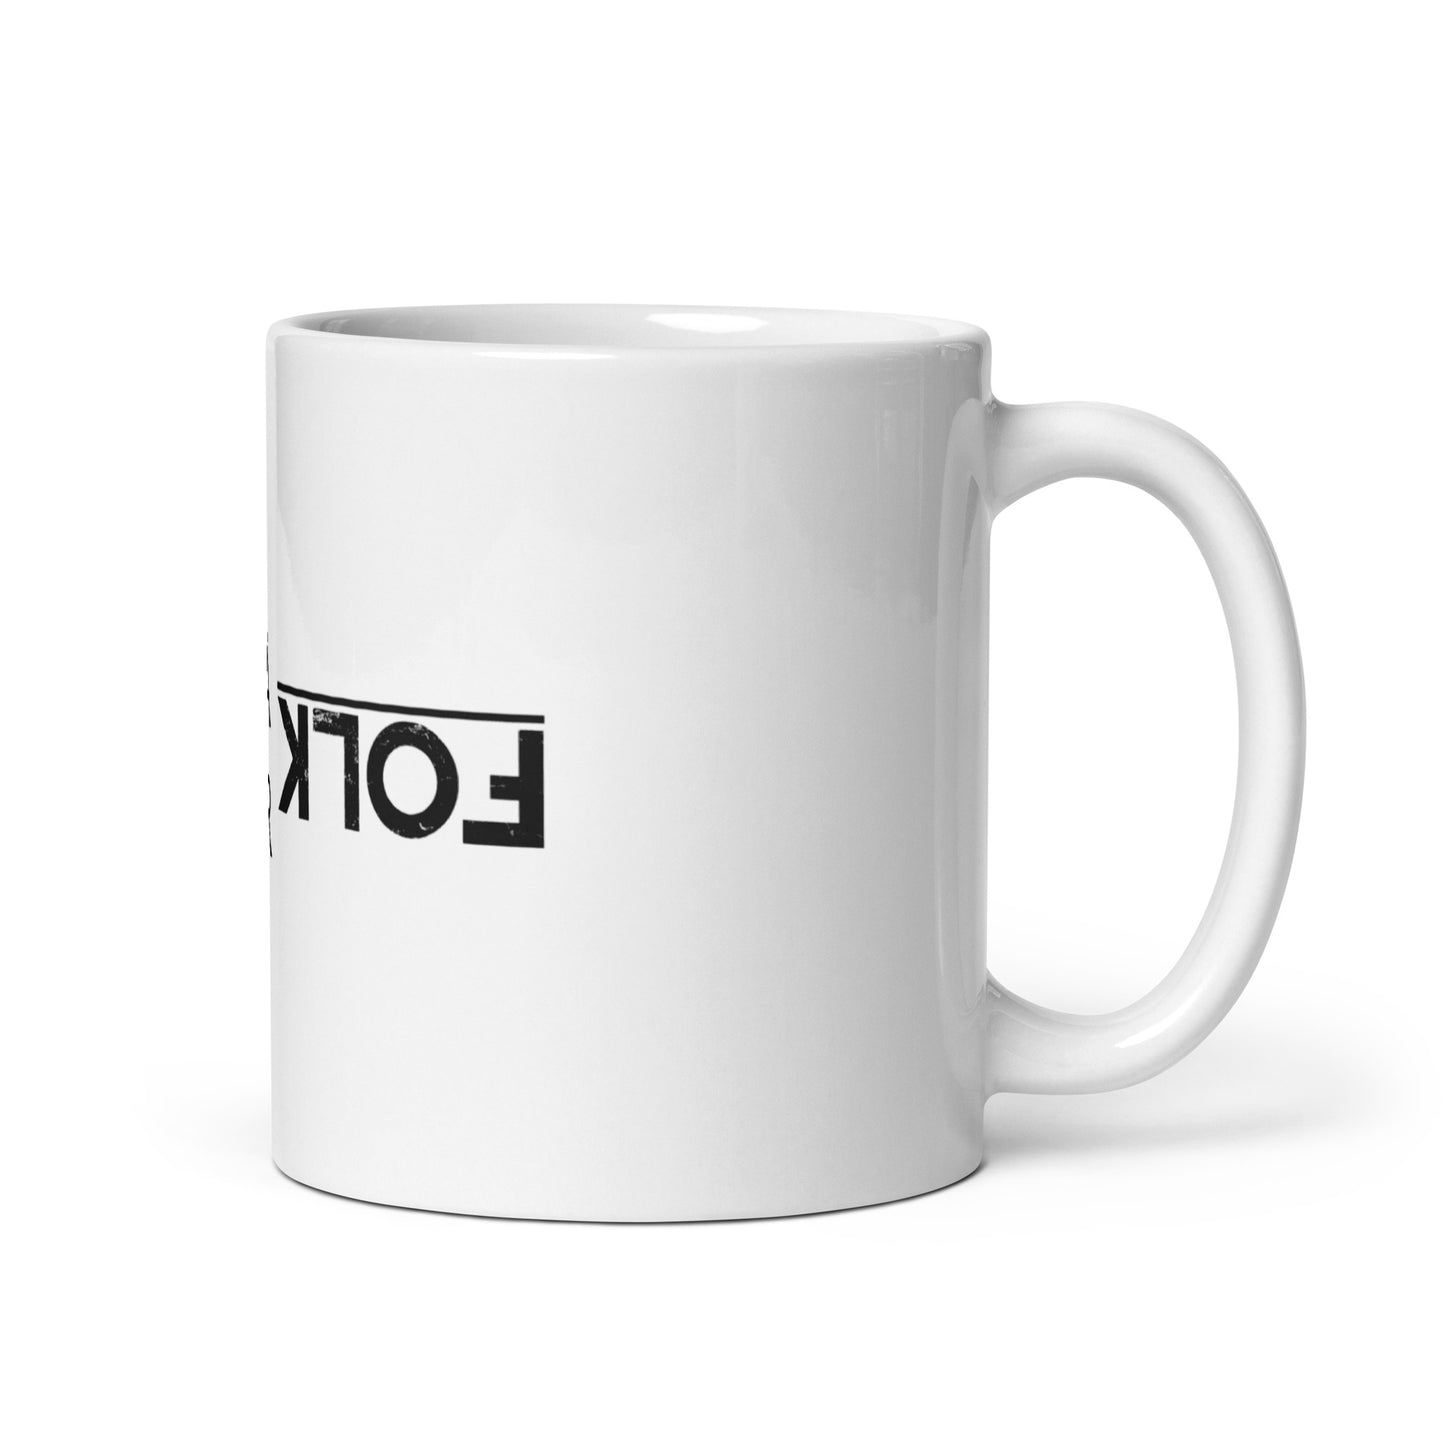 Folk Är Folk, official logo, White glossy mug